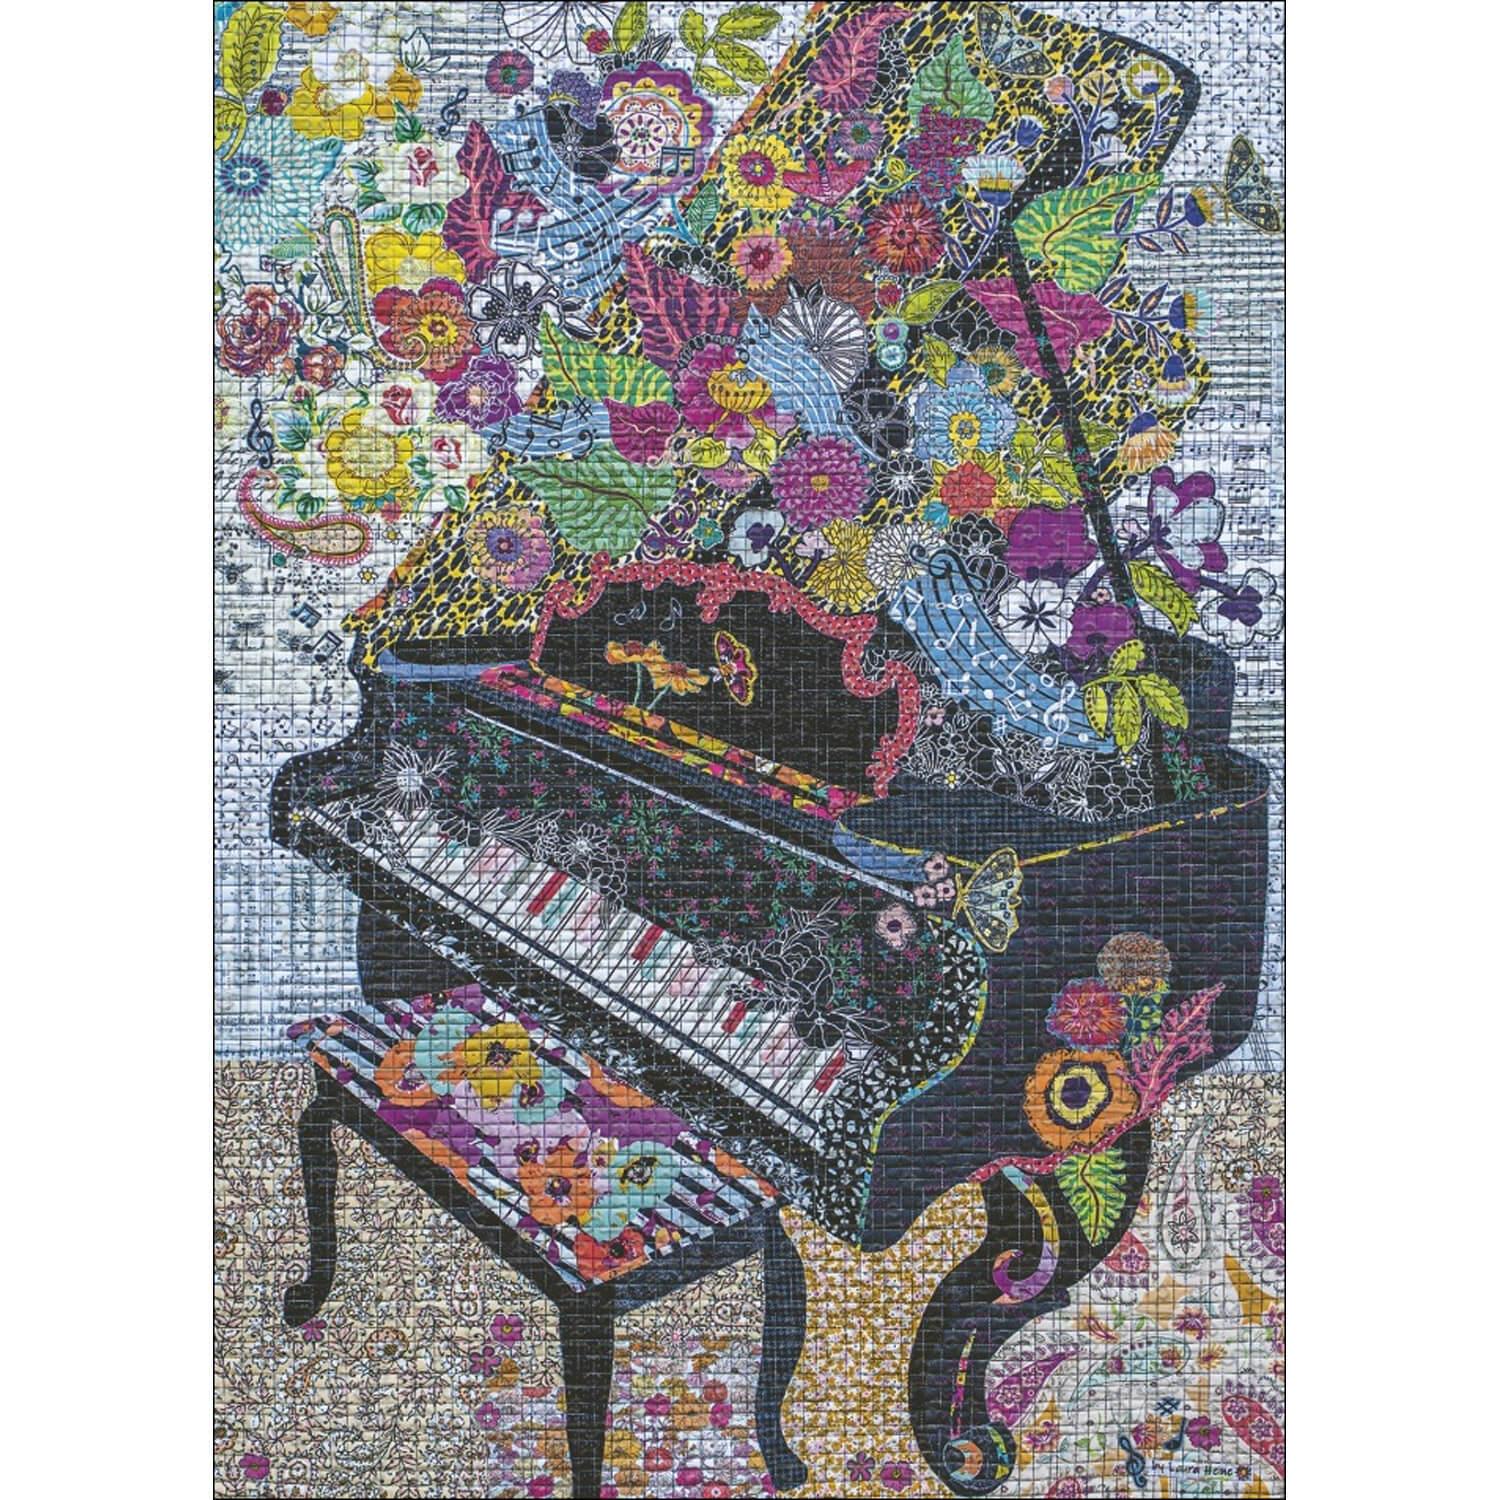 Puzzle 1000 pièces : Piano couture - Heye - Rue des Puzzles